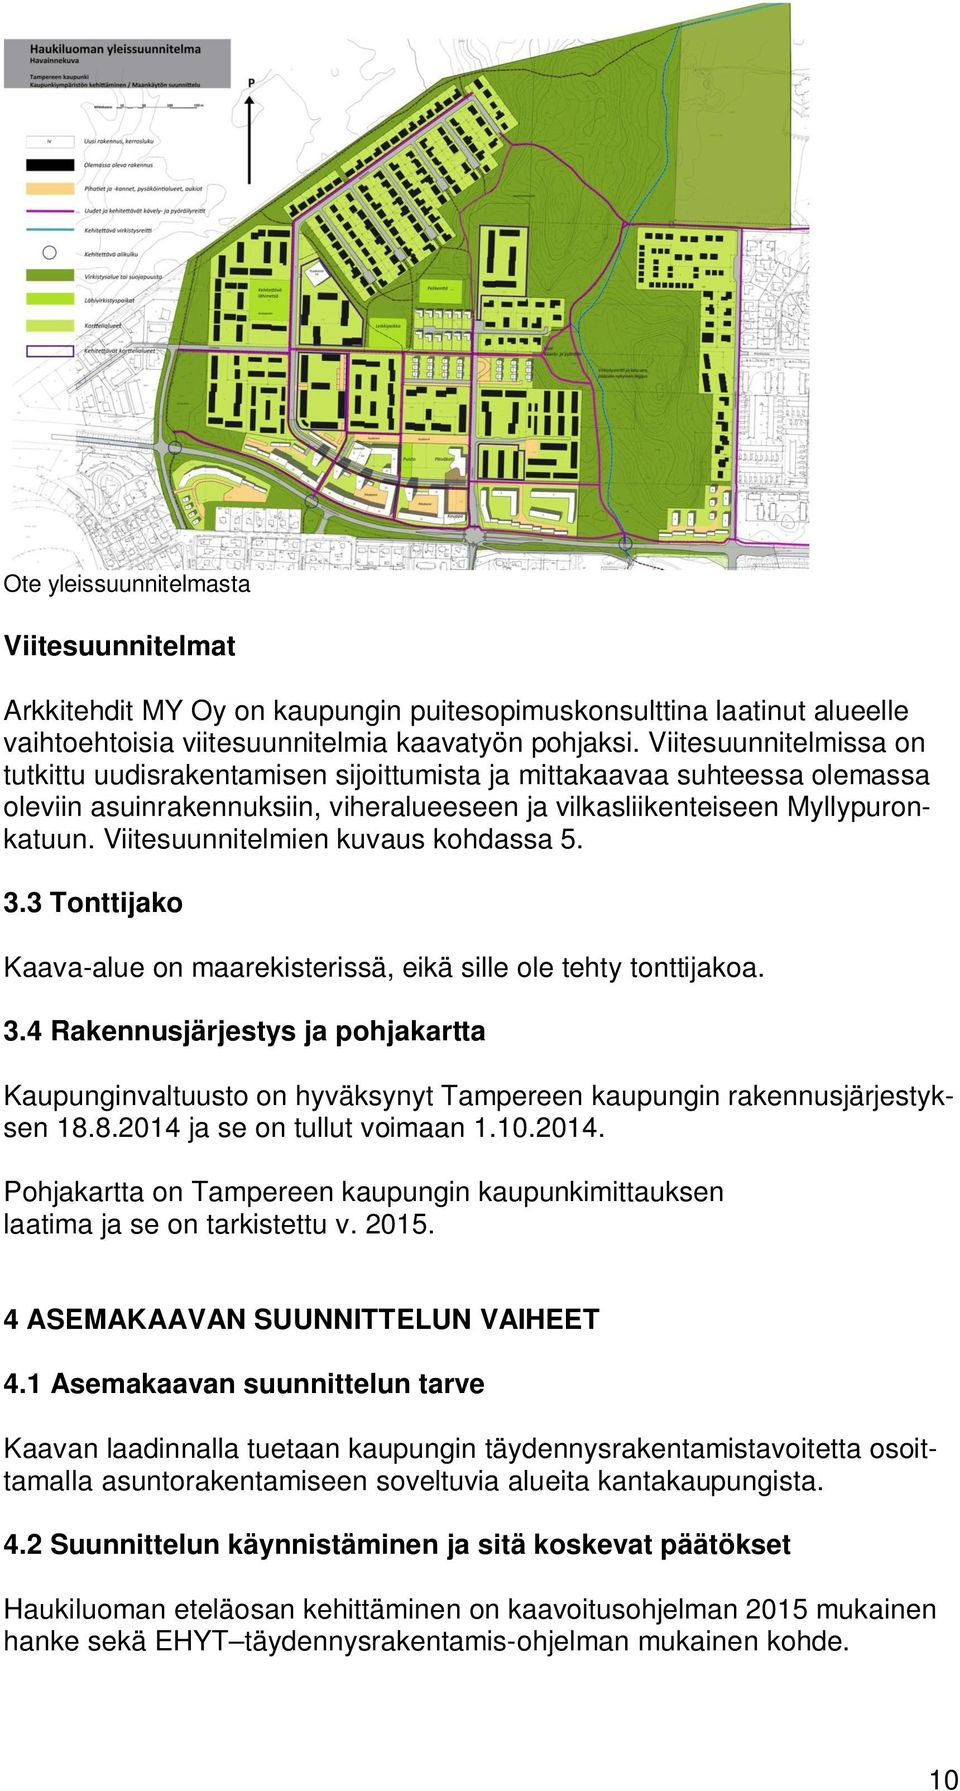 Viitesuunnitelmien kuvaus kohdassa 5. 3.3 Tonttijako Kaava-alue on maarekisterissä, eikä sille ole tehty tonttijakoa. 3.4 Rakennusjärjestys ja pohjakartta Kaupunginvaltuusto on hyväksynyt Tampereen kaupungin rakennusjärjestyksen 18.